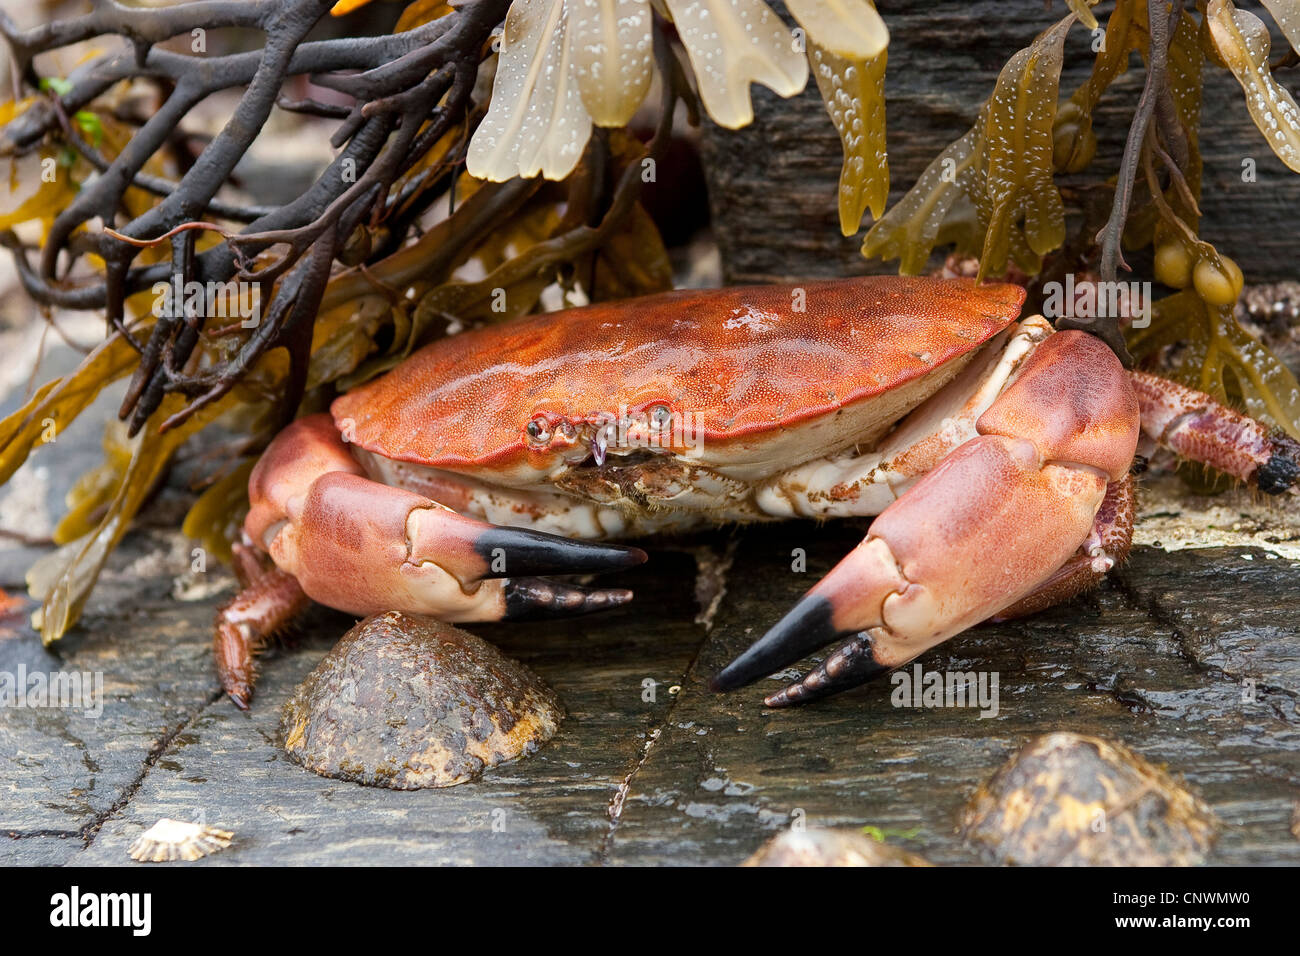 Crabe européen (Cancer pagurus), Sitting on rock humide chez les algues, Allemagne Banque D'Images